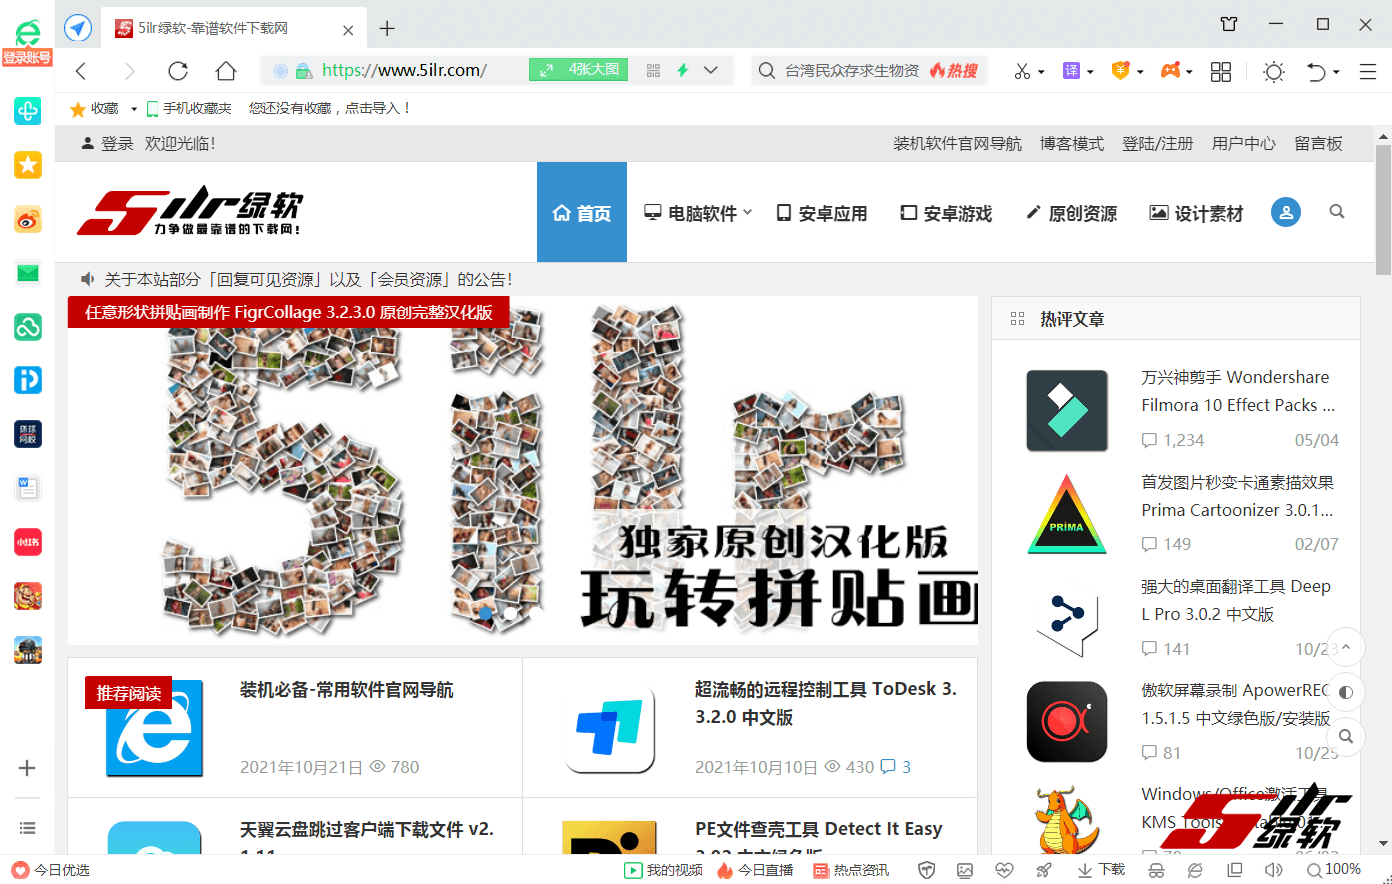 360安全浏览器 360SE 13.1.6140.0 中文版